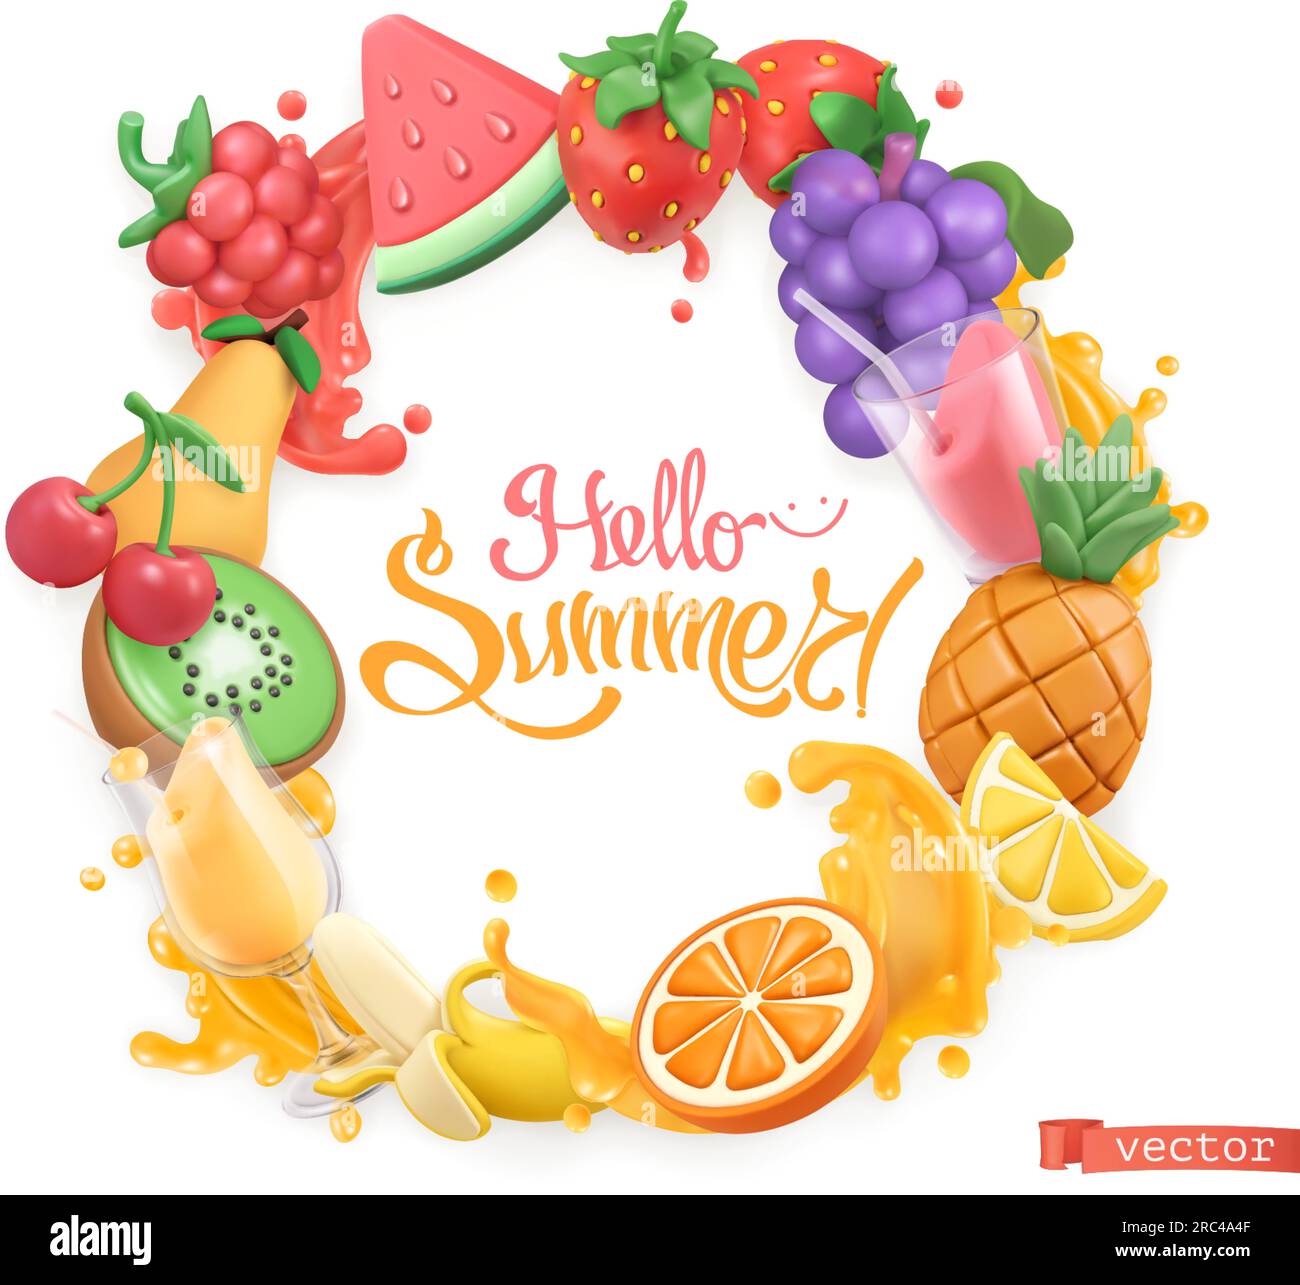 Logotipo de fruta dulce. 3d objetos vectoriales. Hola ilustración de arte plastilina de verano Ilustración del Vector